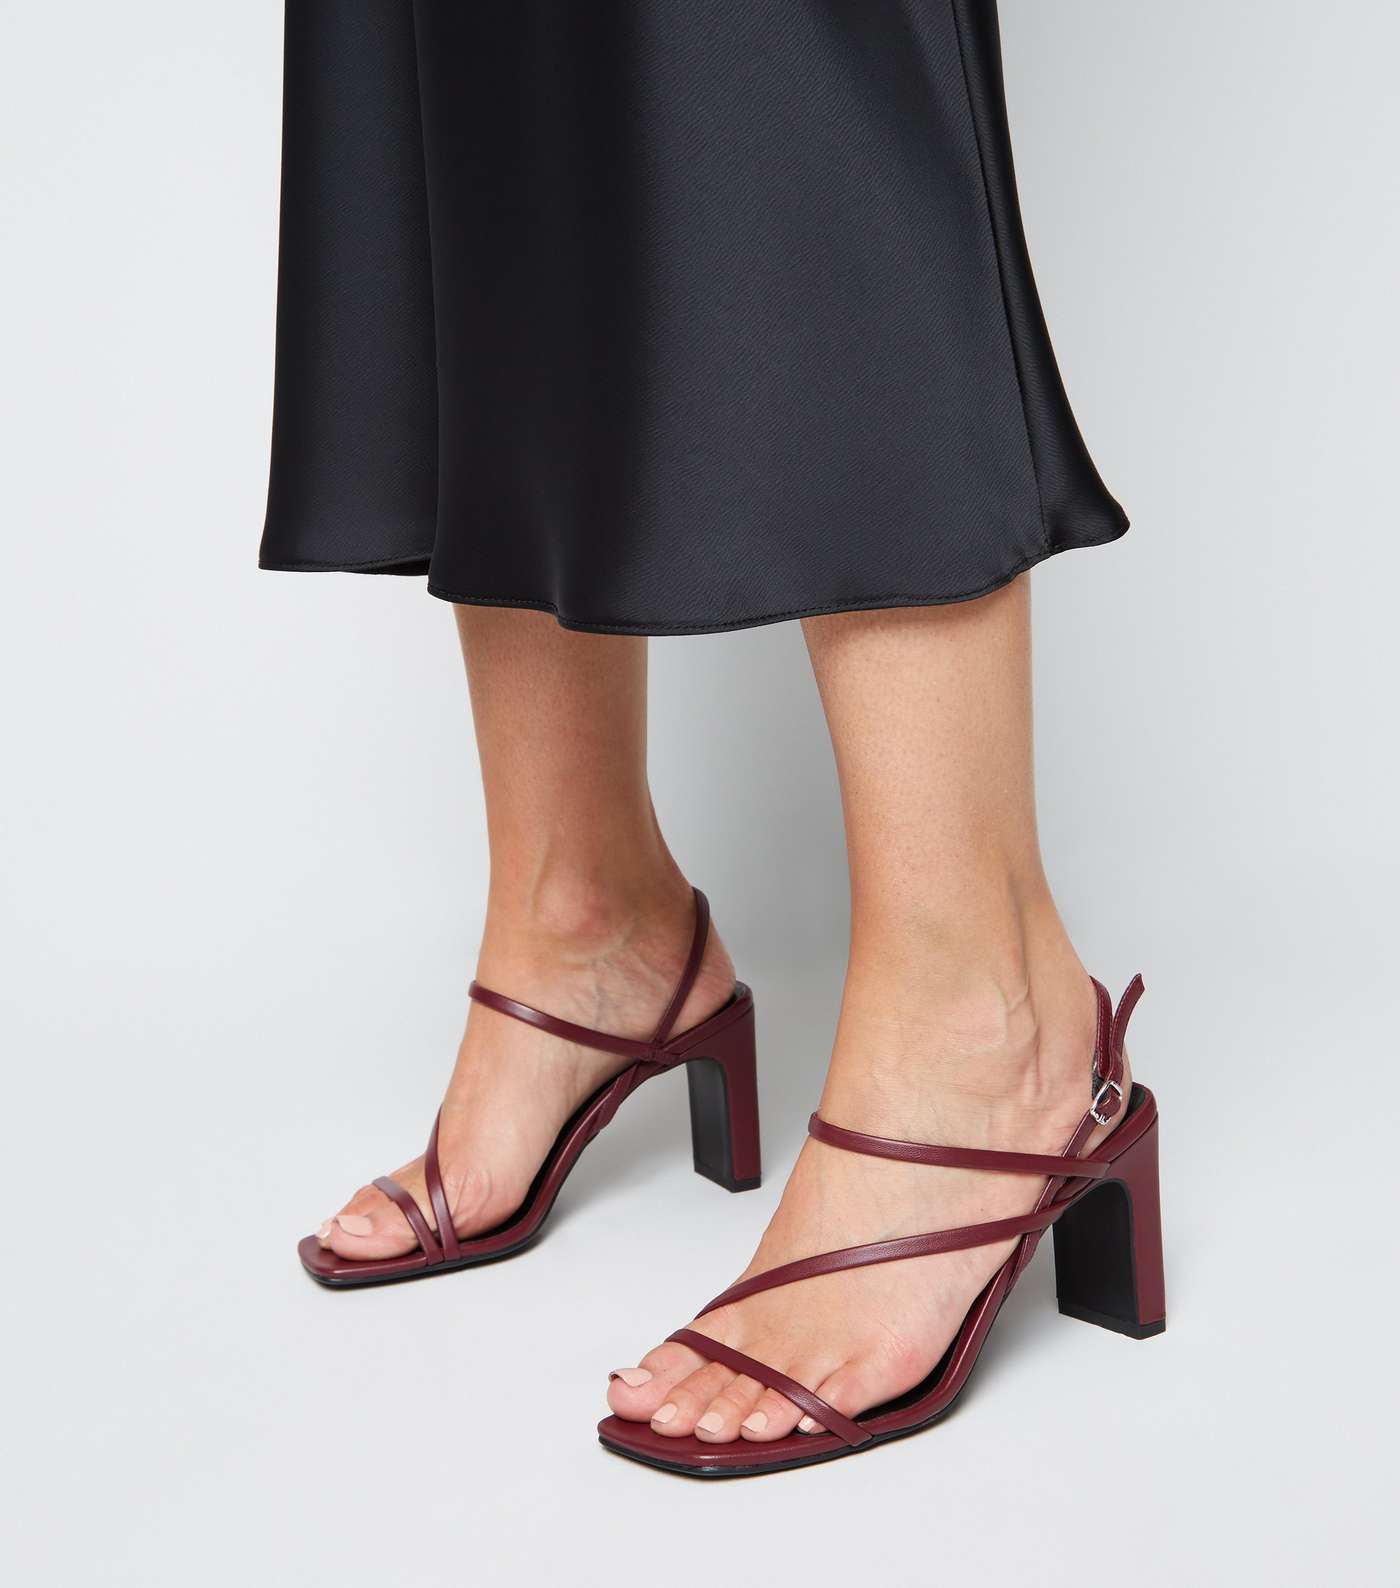 Burgundy Leather-Look Strappy Slim Block Heels Image 2